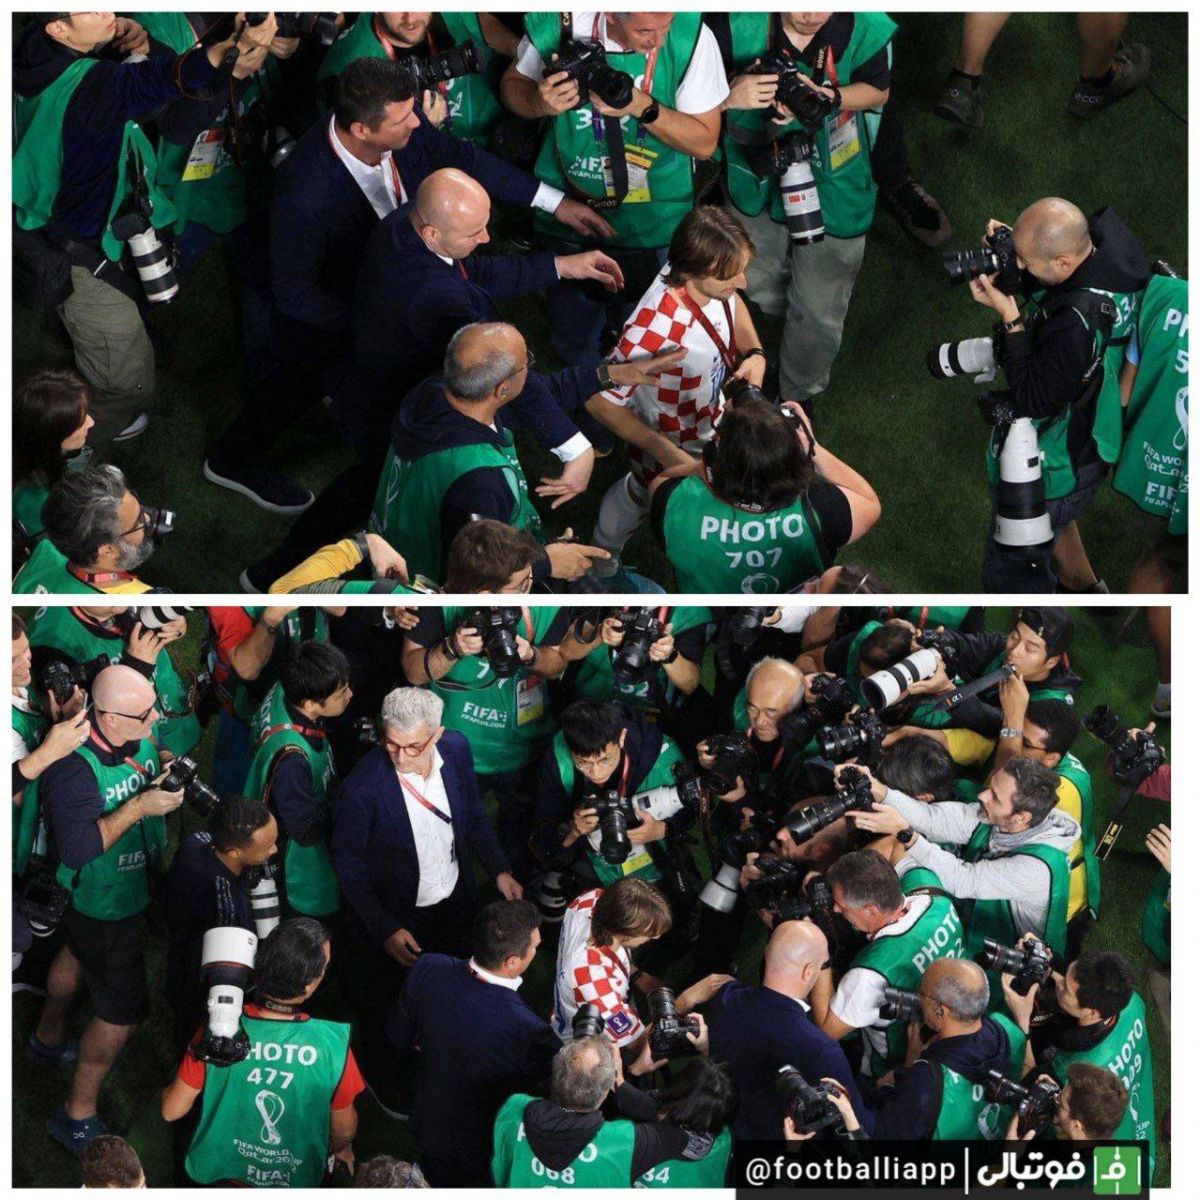 هجوم عکاسان به سمت لوکا مودریچ ستاره تیم ملی کرواسی، پس از برتری کرواسی مقابل مراکش